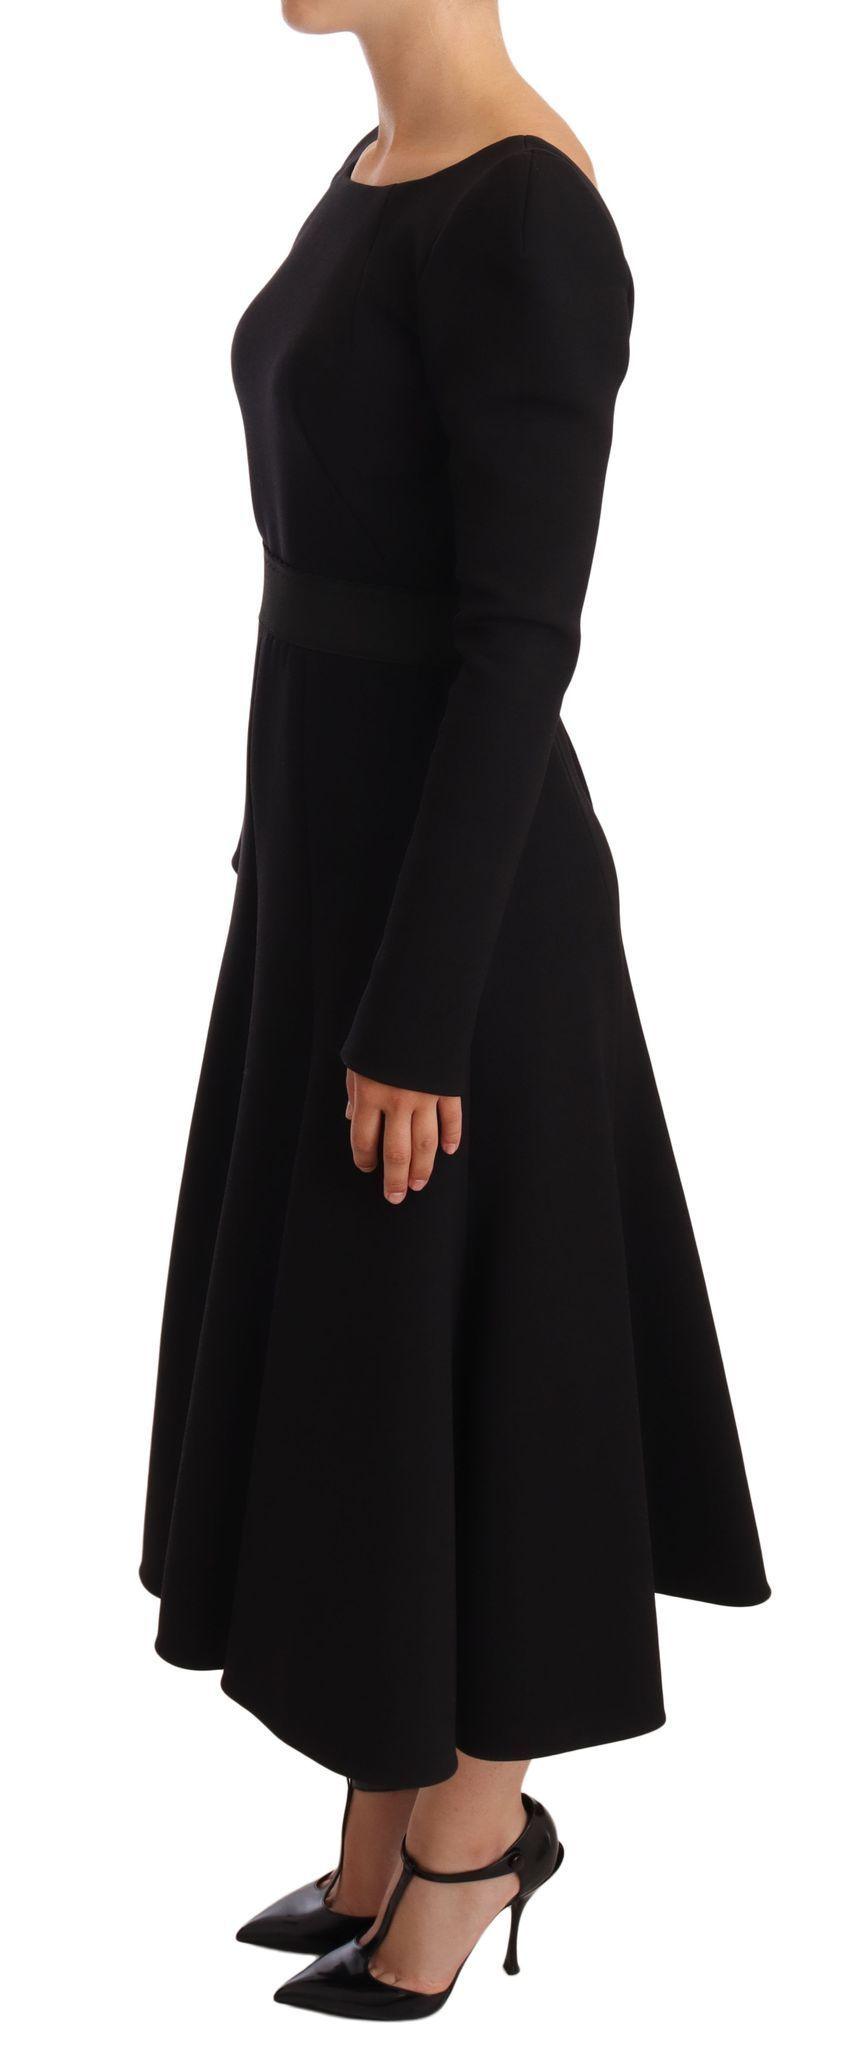 Dolce & Gabbana Elegant Black Stretch Sheath Mid-Calf Dress - PER.FASHION